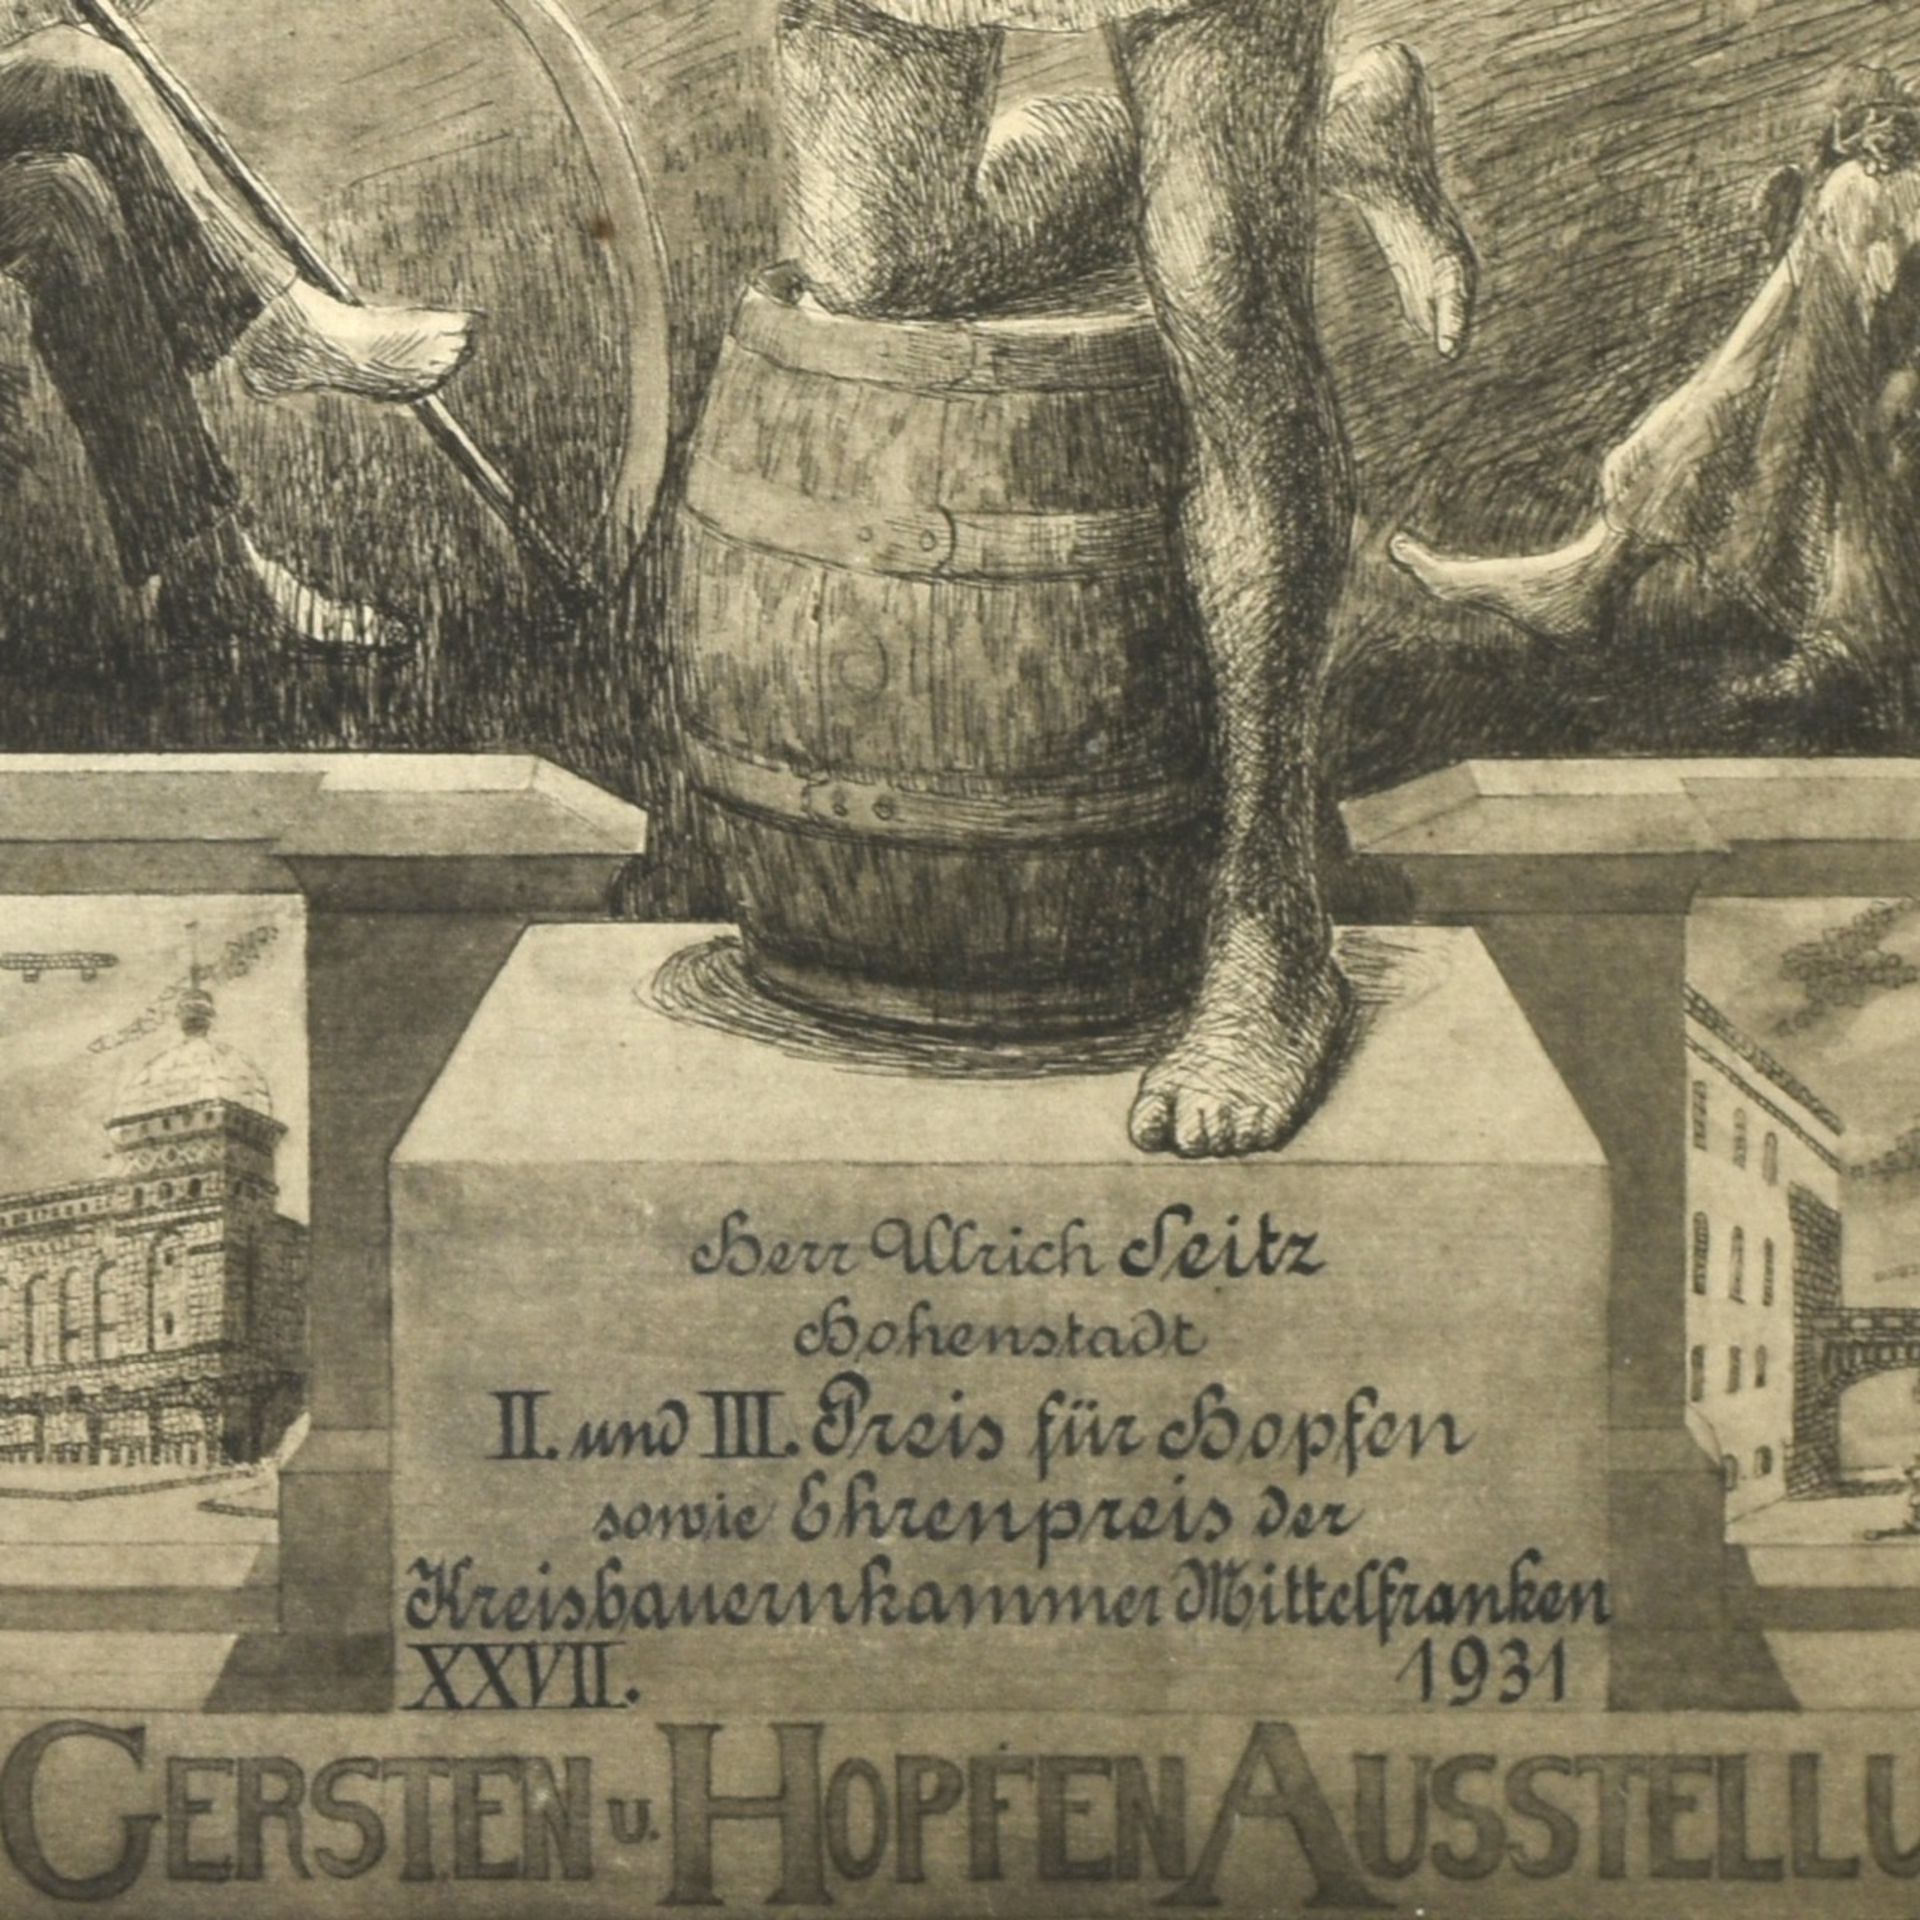 Preisplakat Deutsche Gersten- und Hopfen-Ausstellung 1931 - Bild 4 aus 5